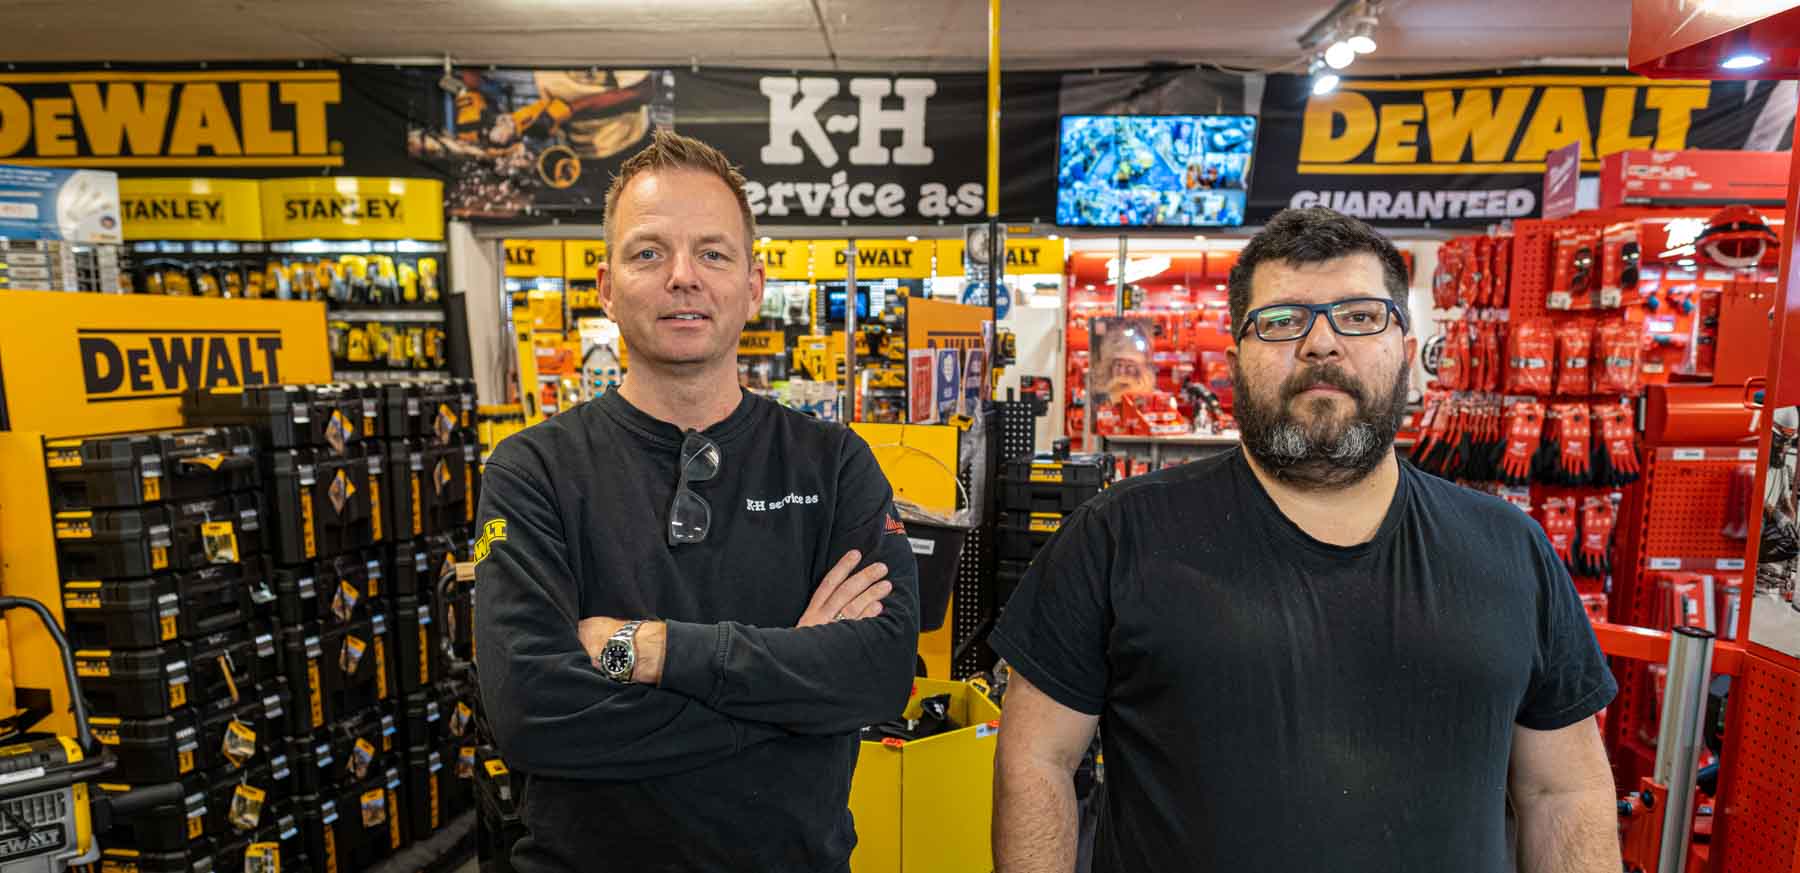 To karer i K-H Service verktøybutikk.